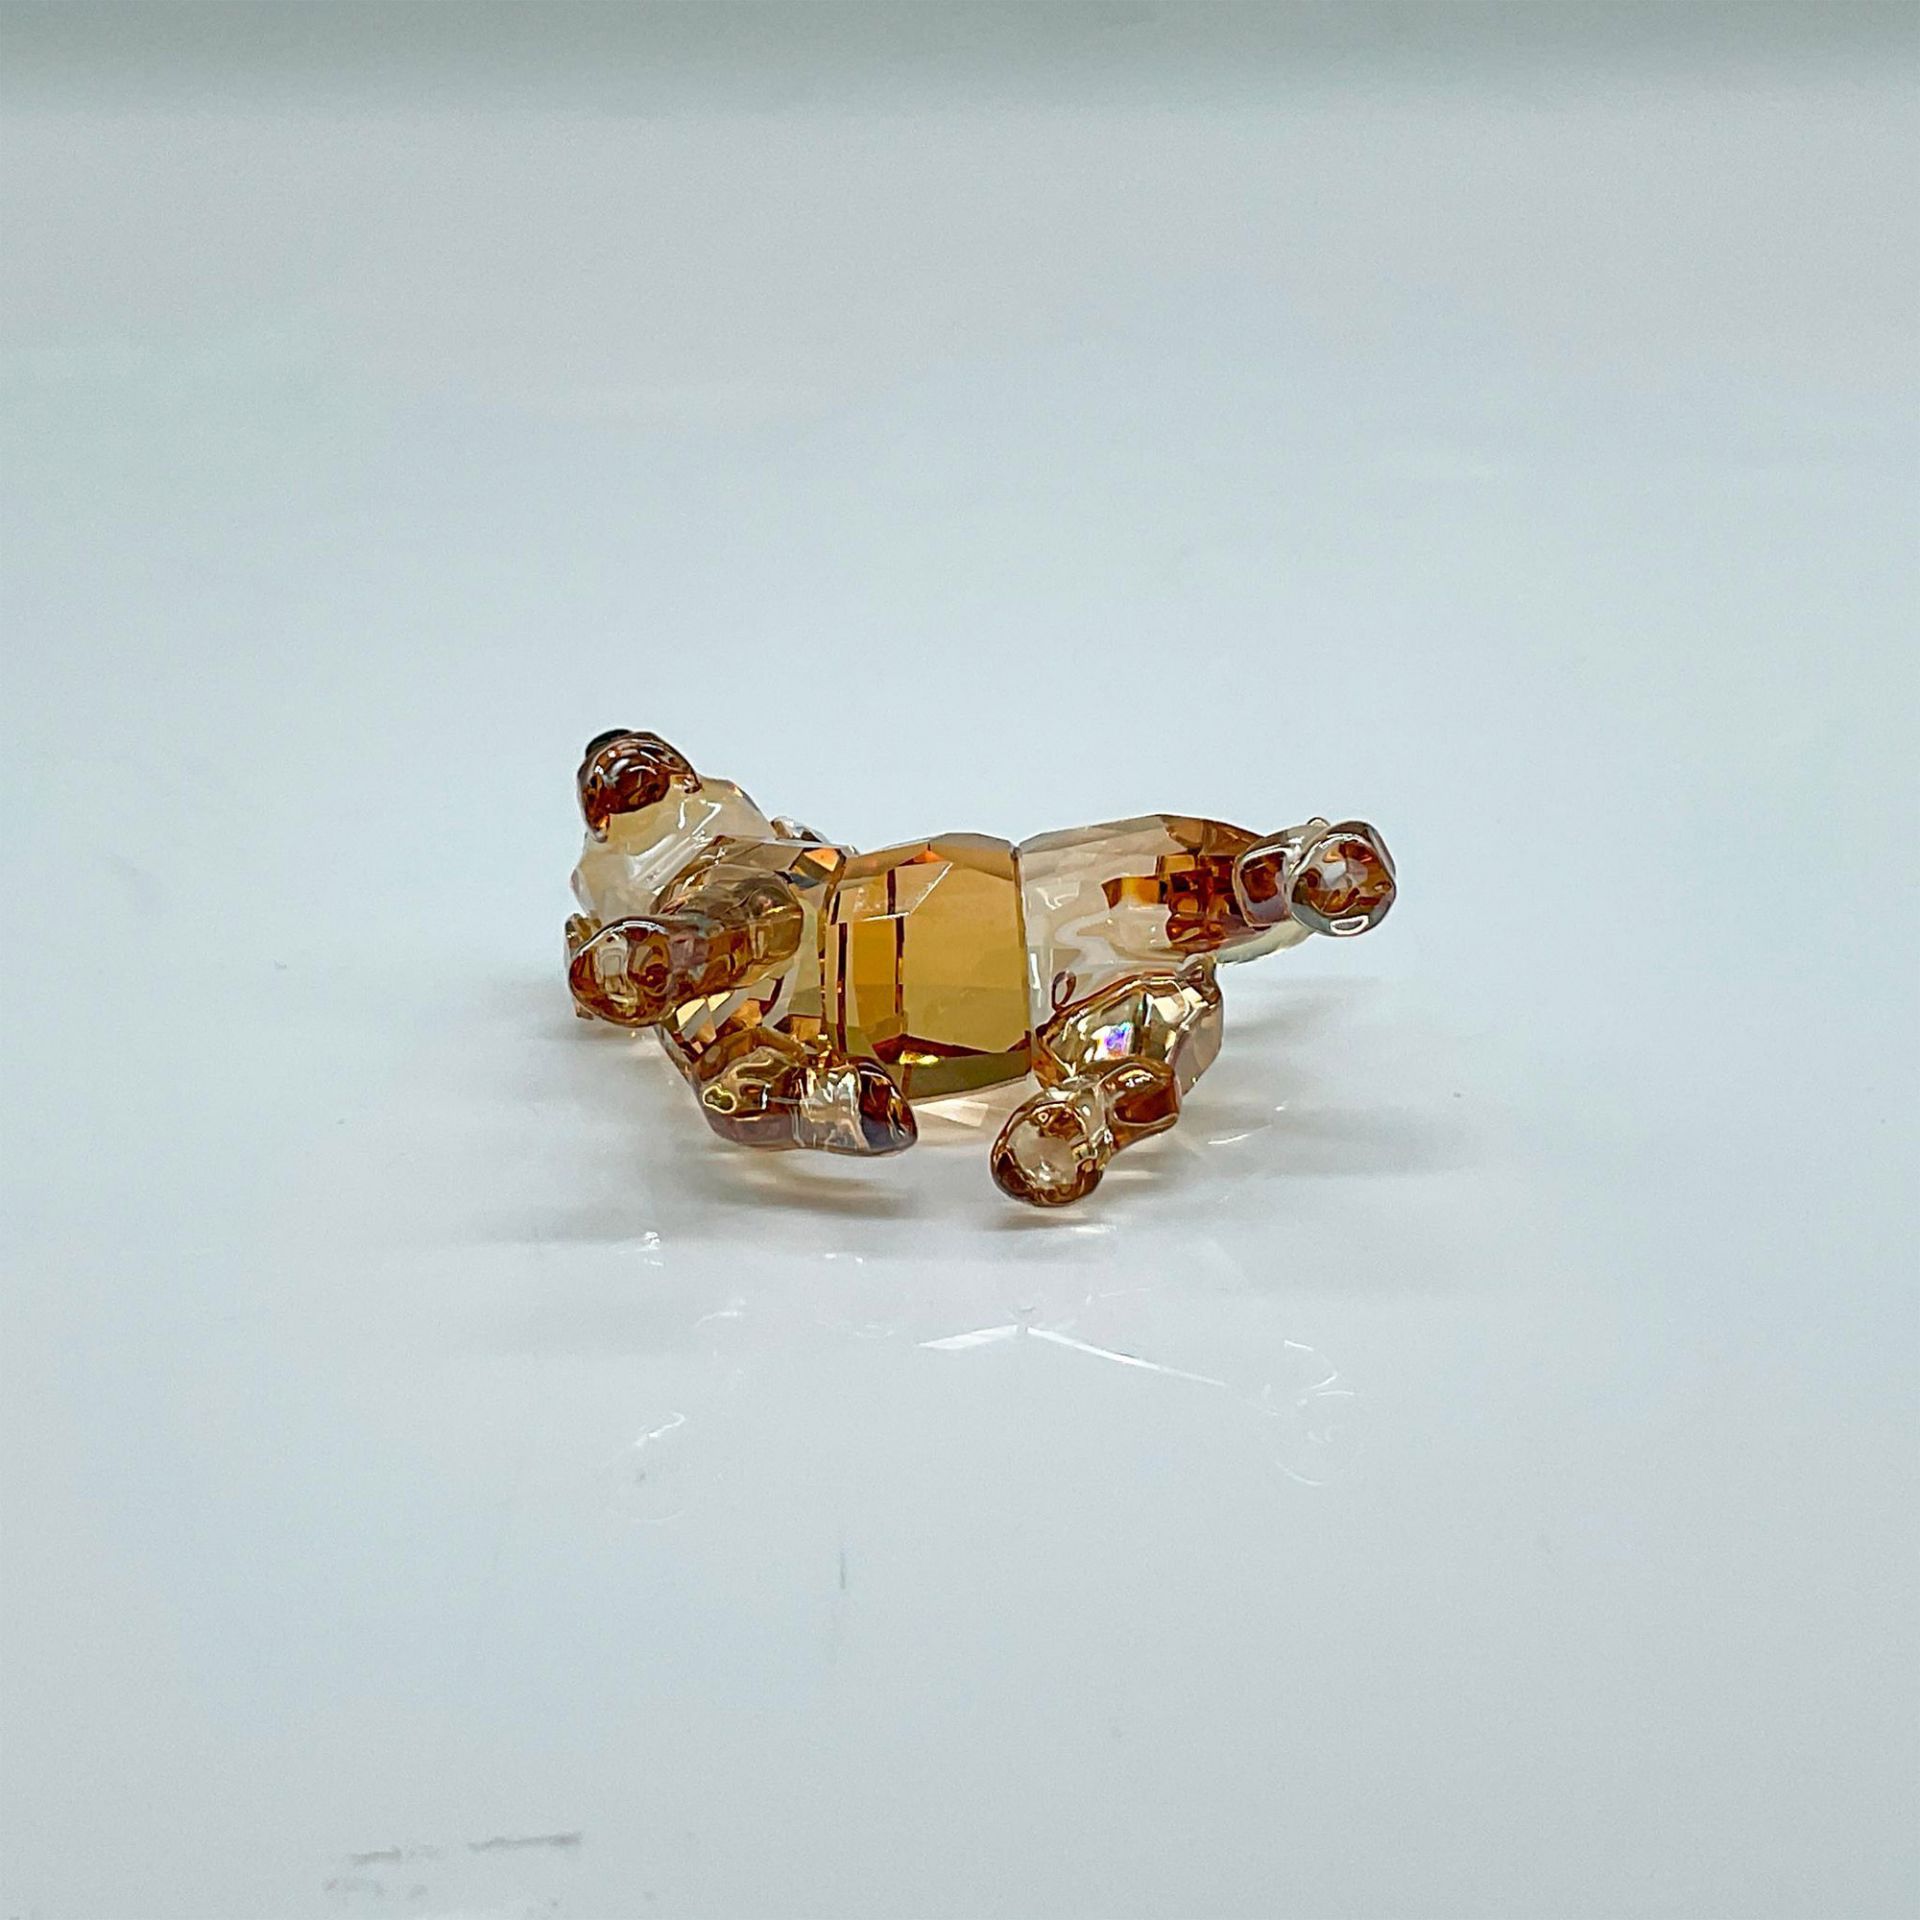 Swarovski Crystal Figurine, Golden Retriever Puppy - Bild 3 aus 4